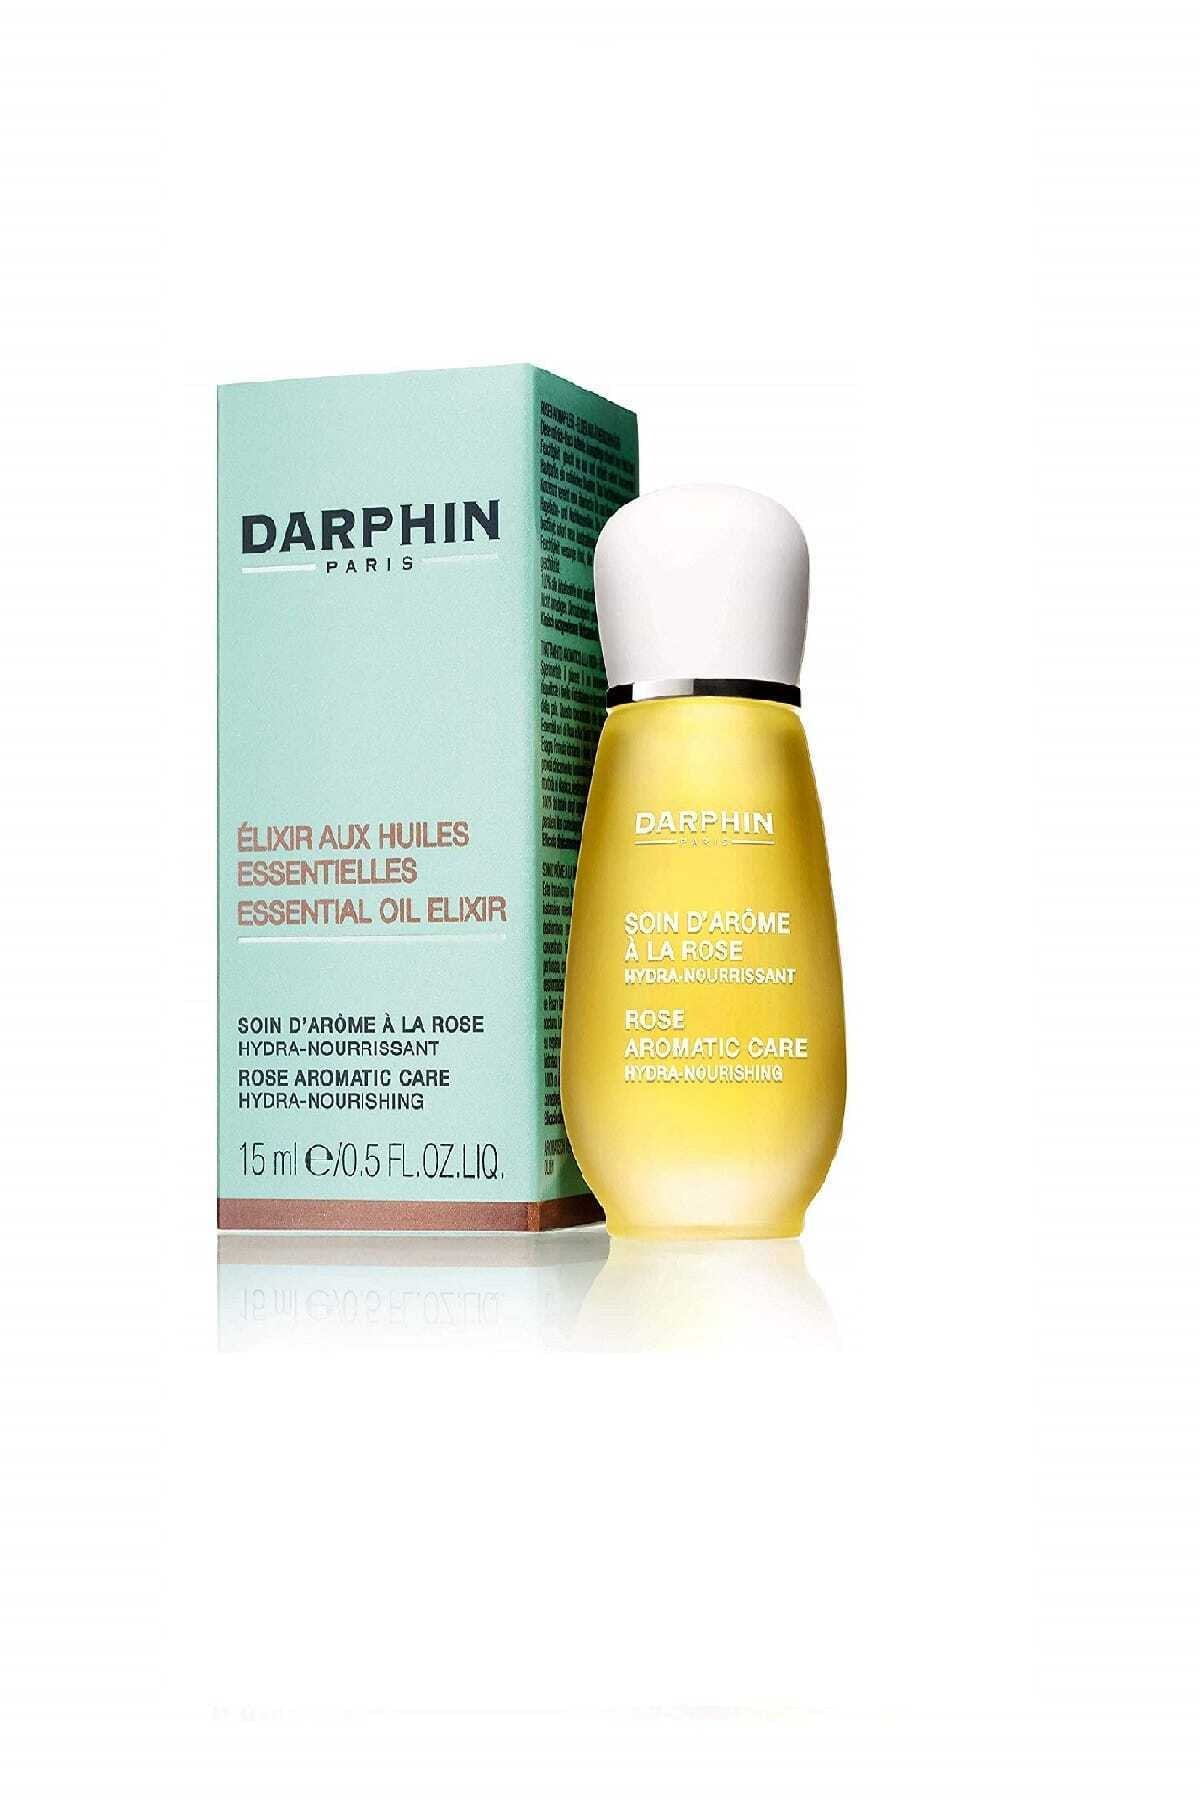 Darphin Aromatik Bakım- Rose Aromatic Care Hydra-Nourishing- Kuru Ciltler 15 ml 882381091576